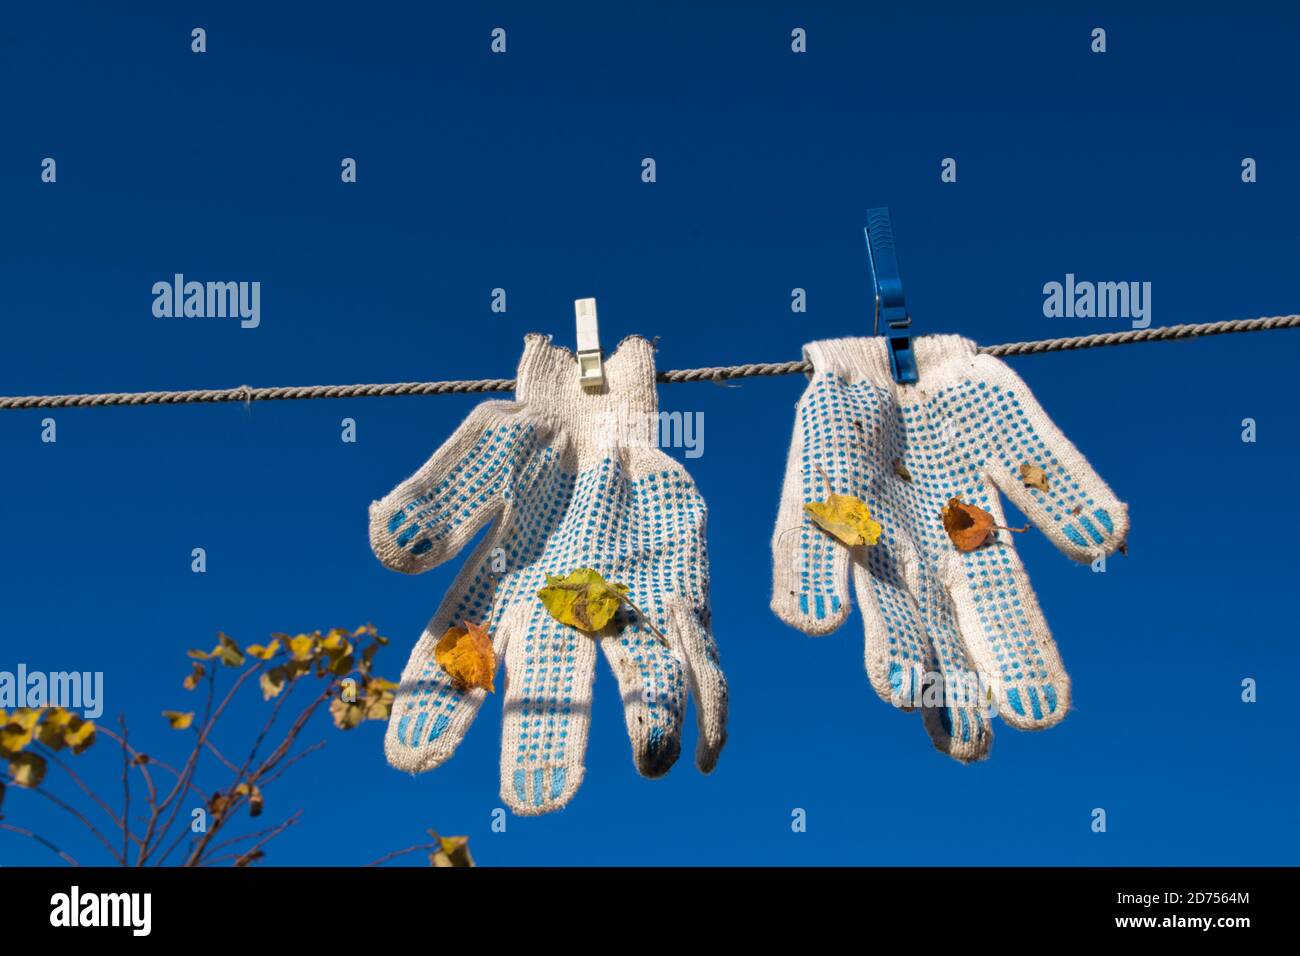 Paire de gants de travail blancs, attachés avec deux épingles à linge, avec des boutons bleus et des feuilles collées après le travail, accrochées de la corde à linge contre le ciel bleu Banque D'Images